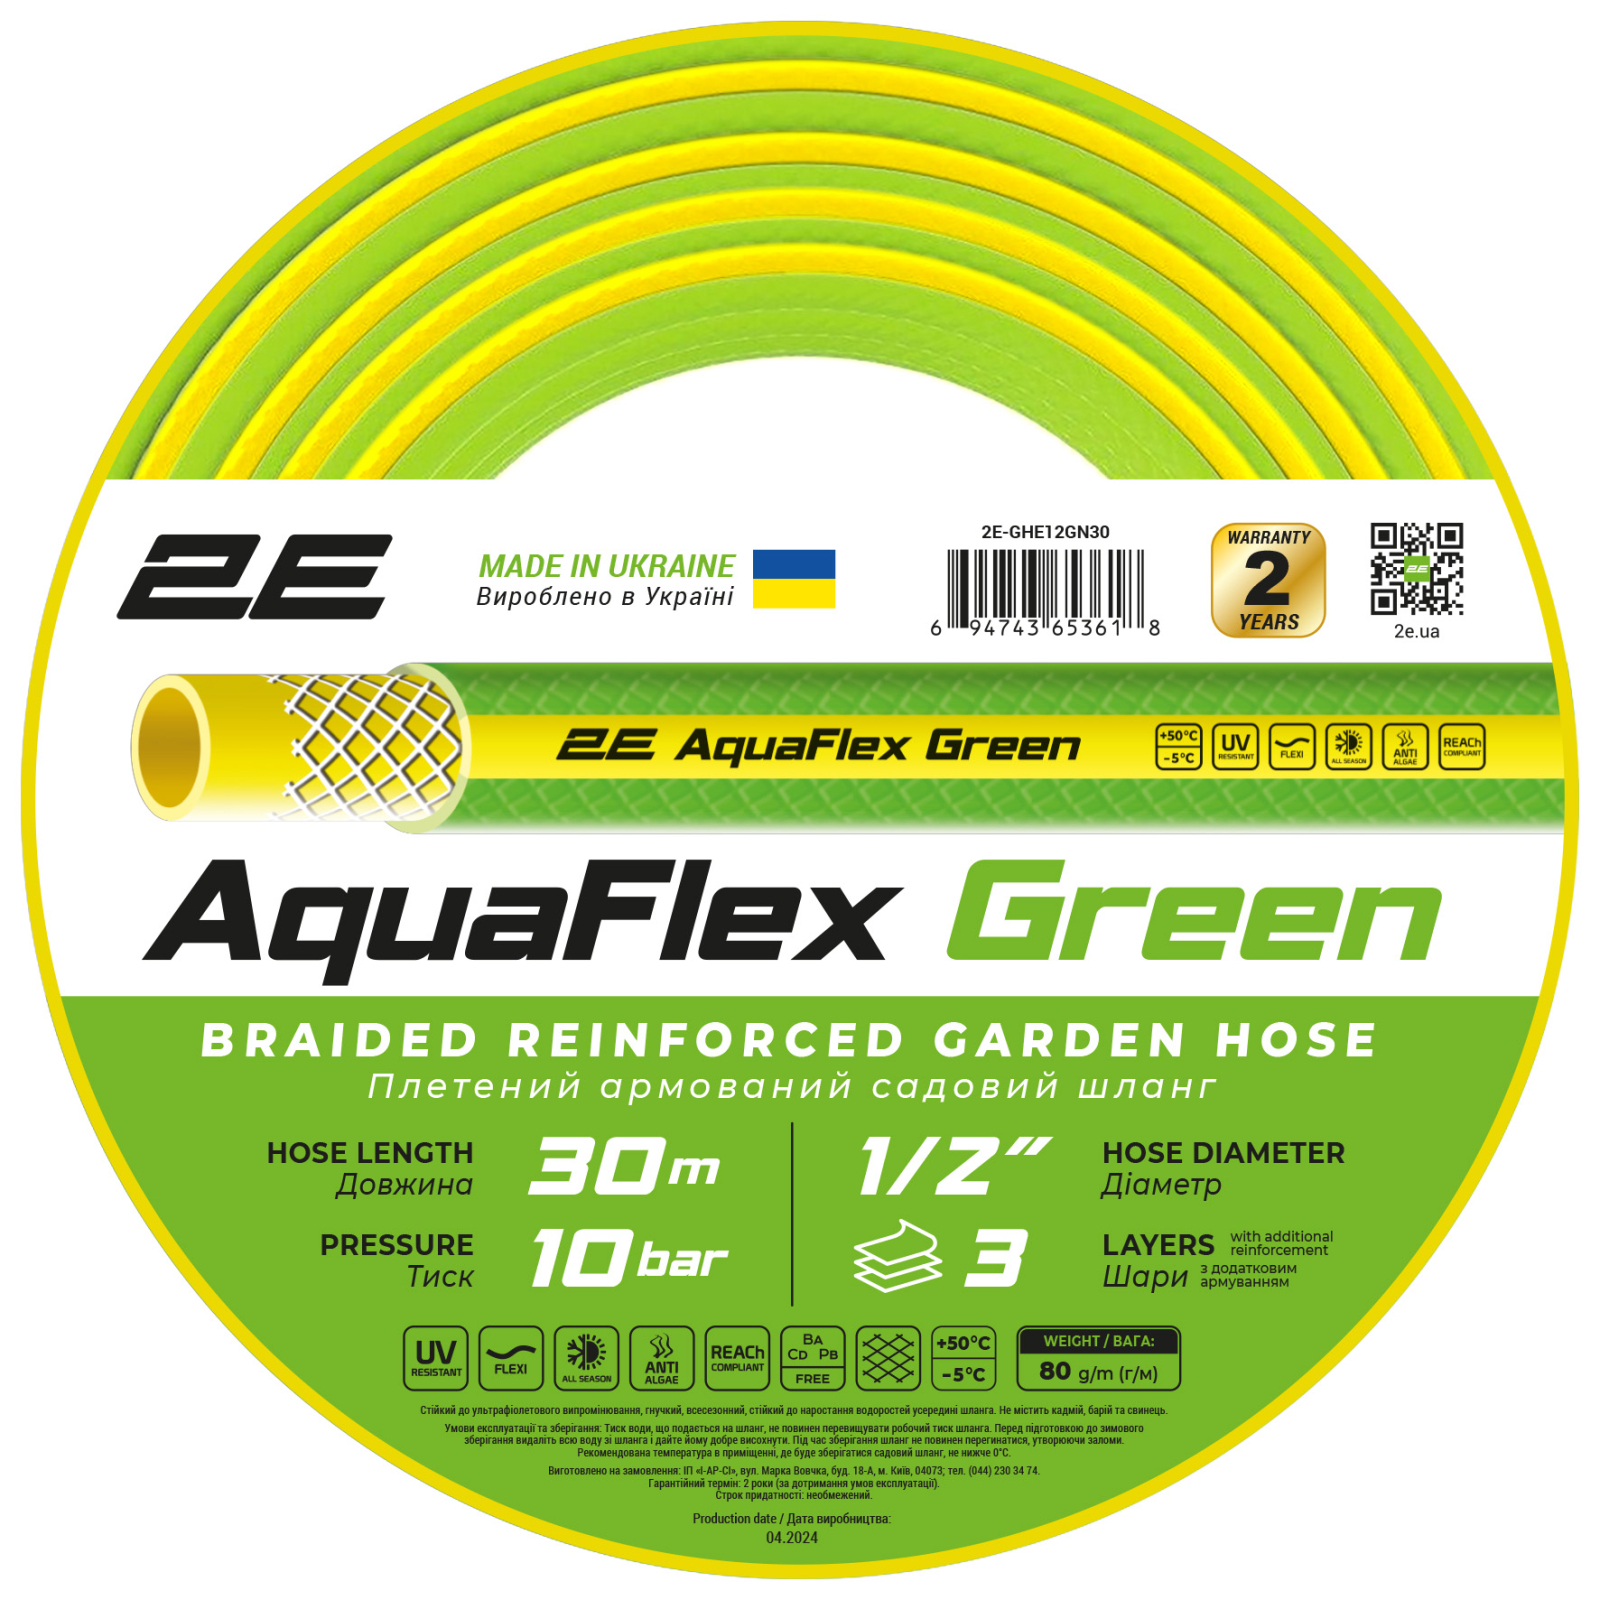 Поливочный шланг 2E AquaFlex Green 1/2", 30м, 3 шари, 10бар, -5+50°C (2E-GHE12GN30)